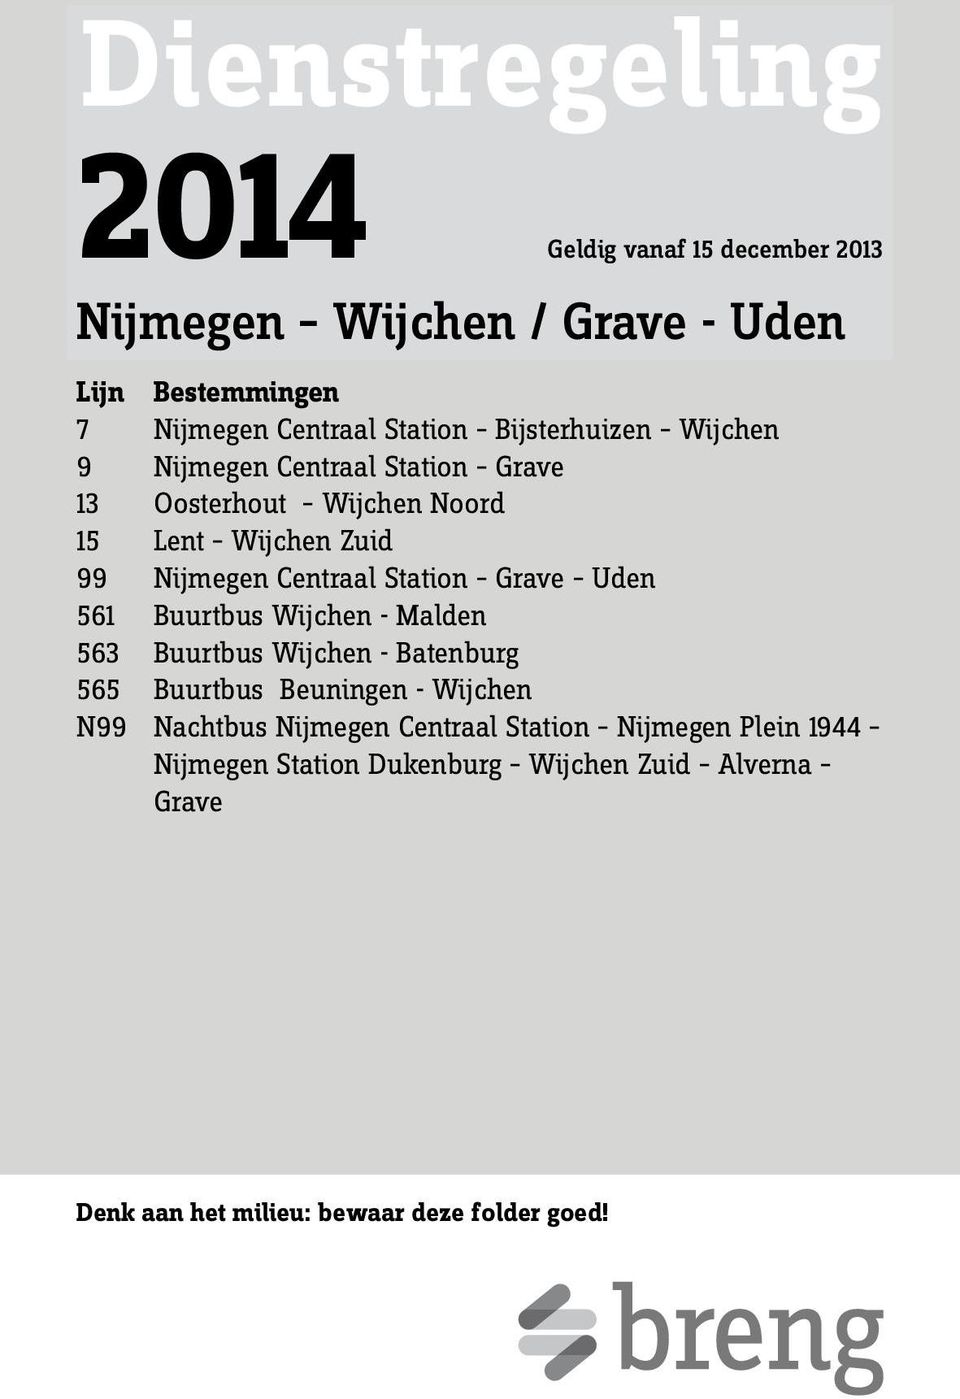 Station Grave Uden 561 Buurtbus Wijchen - Malden 563 Buurtbus Wijchen - Batenburg 565 Buurtbus Beuningen - Wijchen N99 Nachtbus